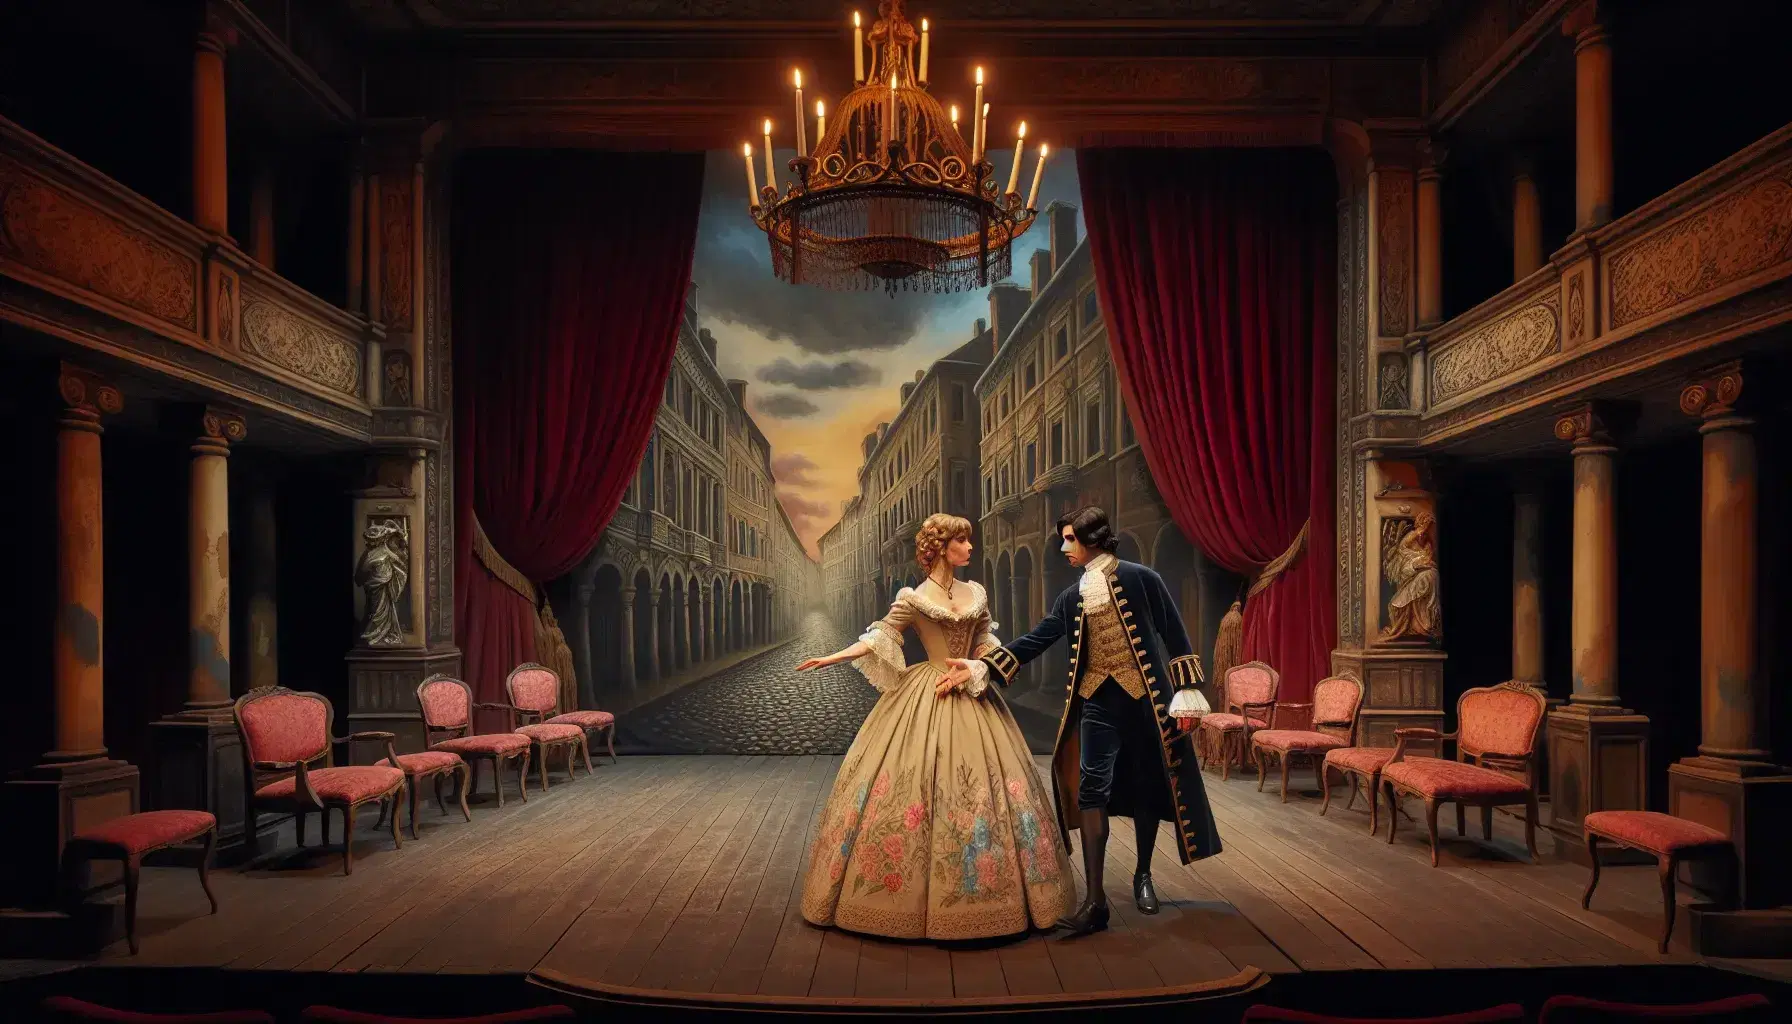 Escenario teatral del siglo XIX con actores en trajes de época, cortinas de terciopelo rojo y candelabro, capturando la esencia del teatro romántico.